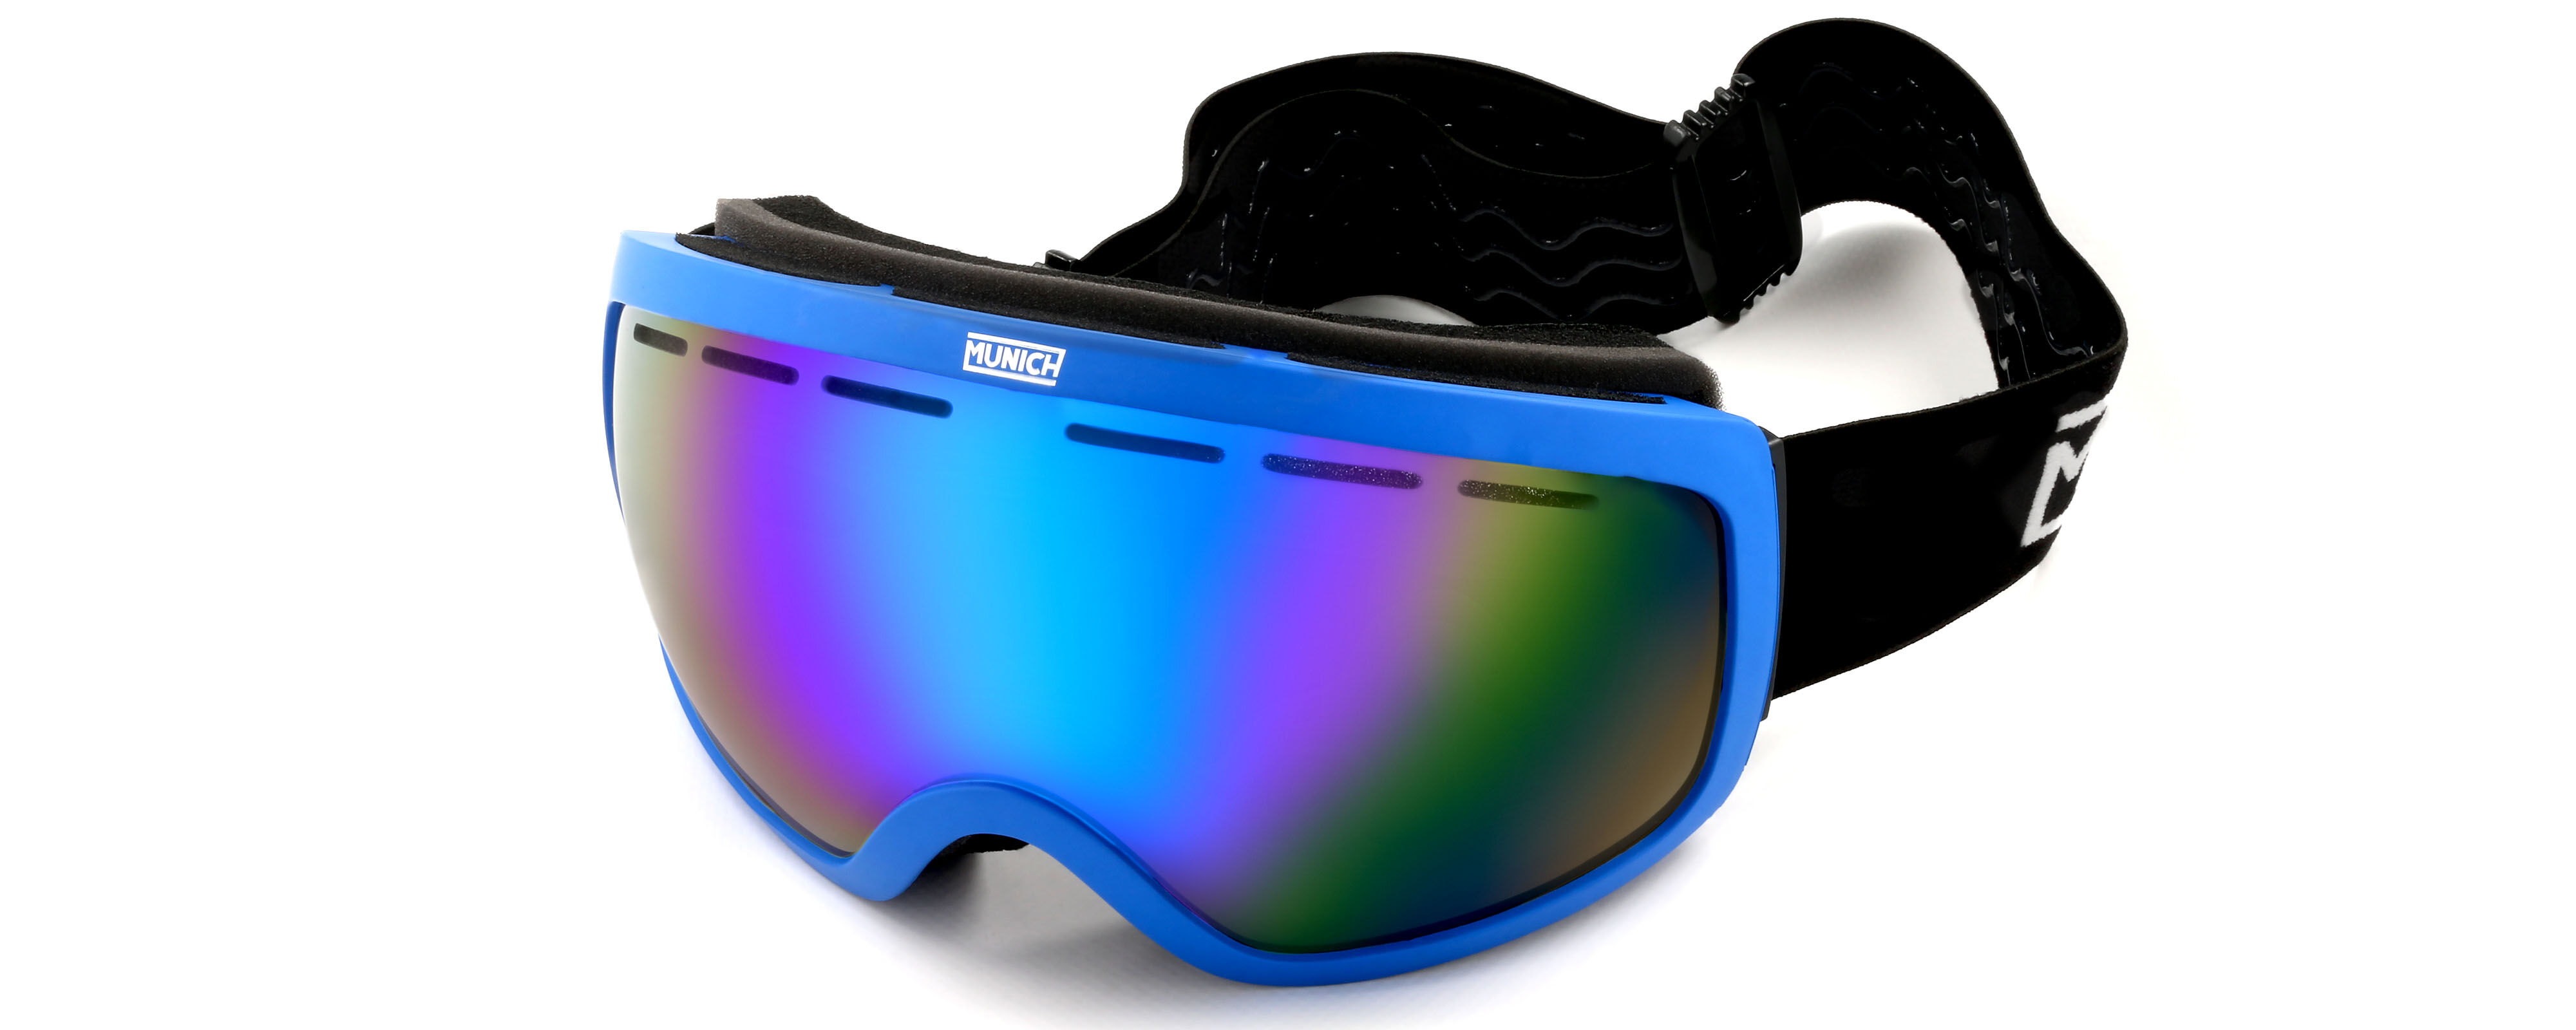 Mascara Ski Munich 27 C03 Gafas De Sol Azul